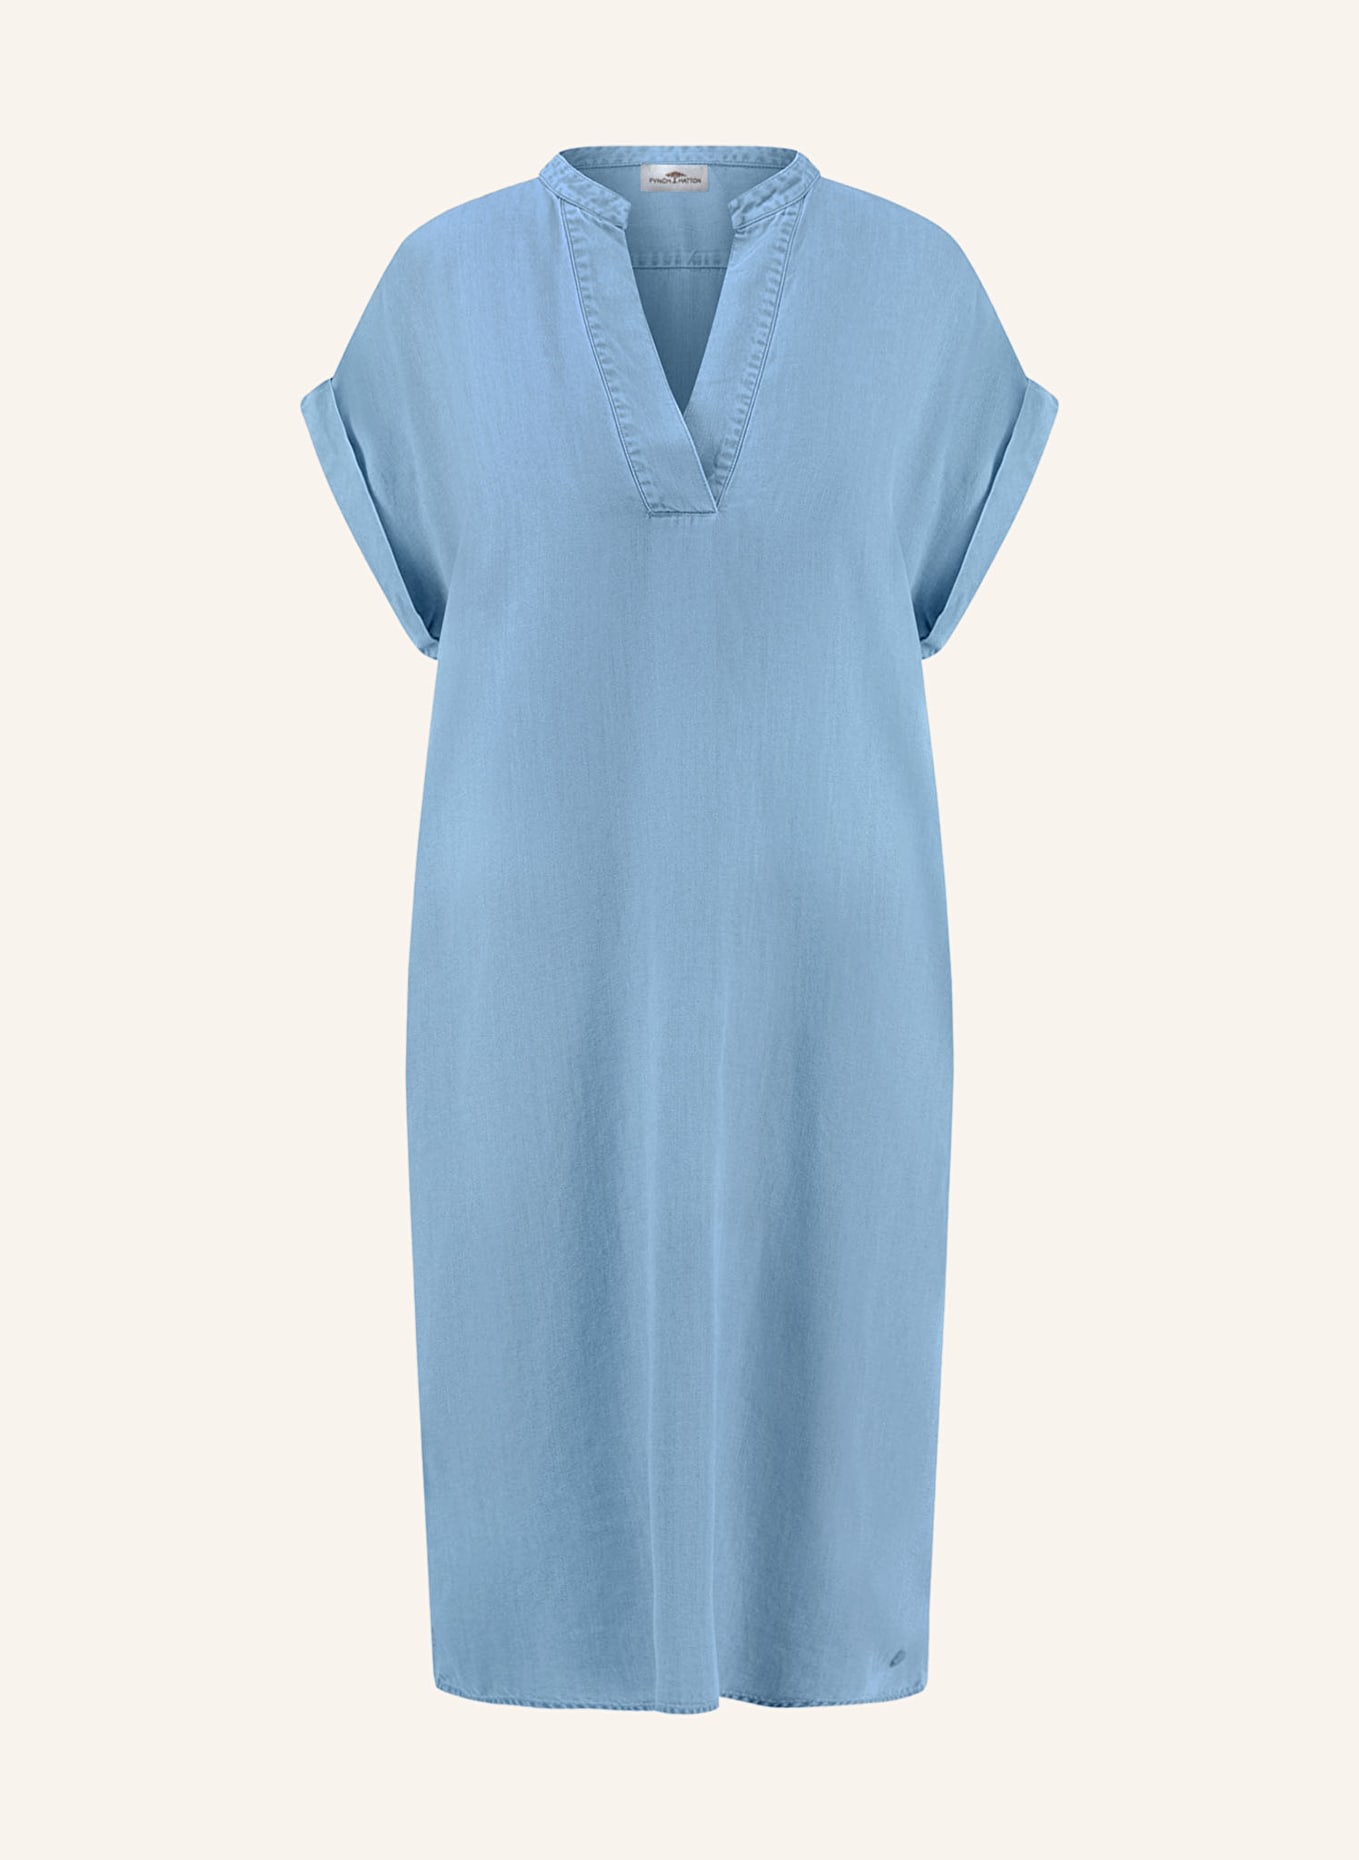 FYNCH-HATTON Kleid in Jeansoptik, Farbe: BLAUGRAU (Bild 1)